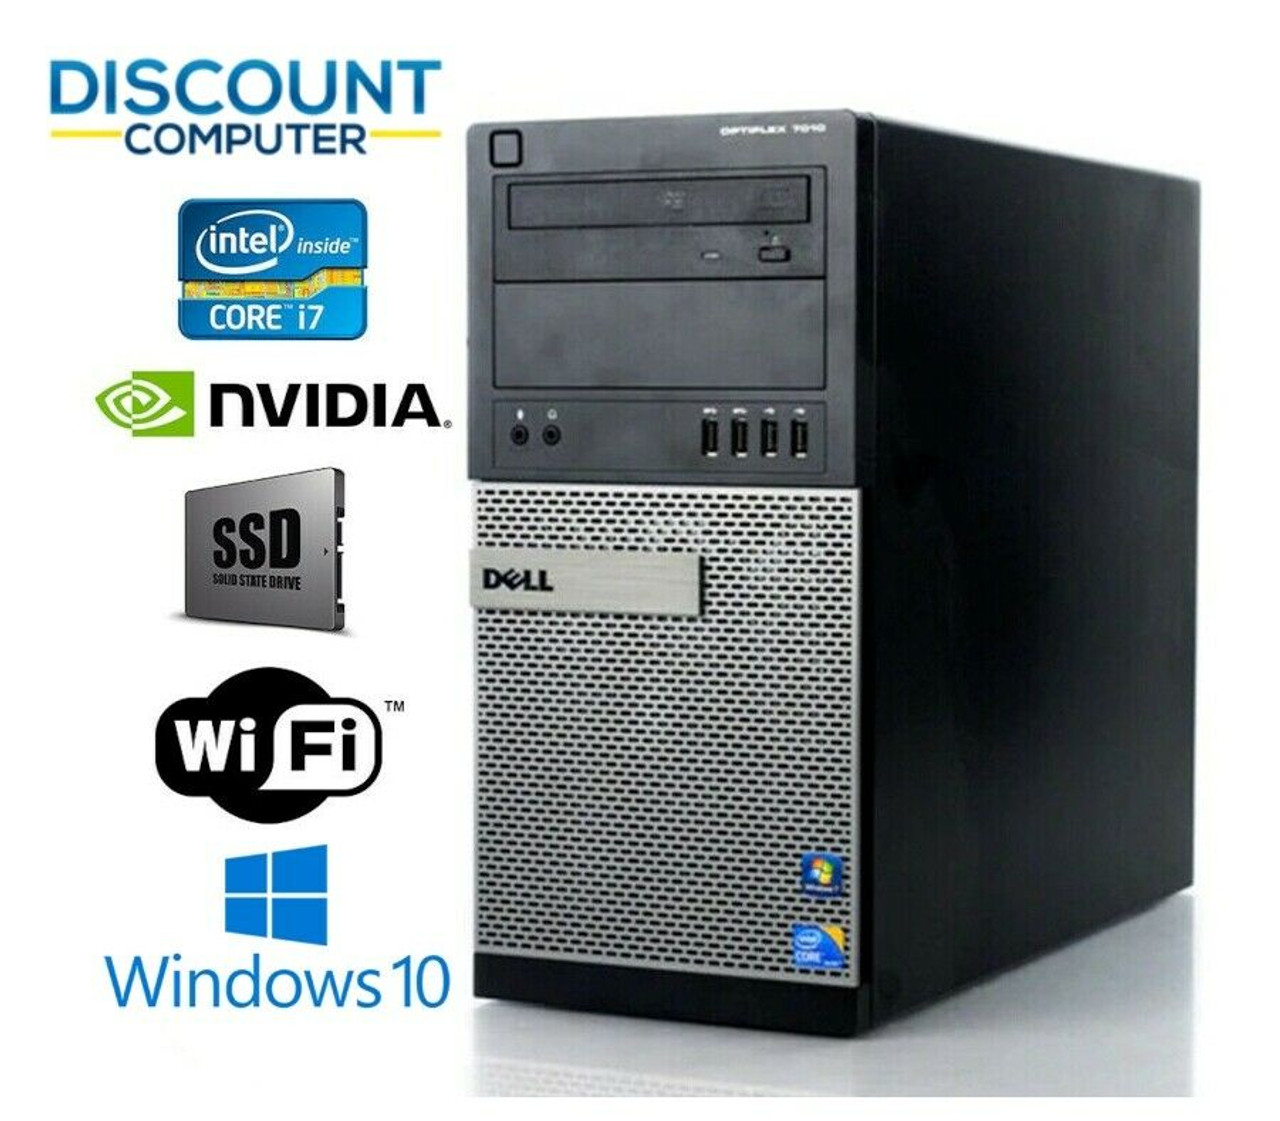 Dell Gaming Pc I7 Nvidia Gtx 1650 Ssd 1tb 16gb Ram Win10 Desktop Computer Discount Computer